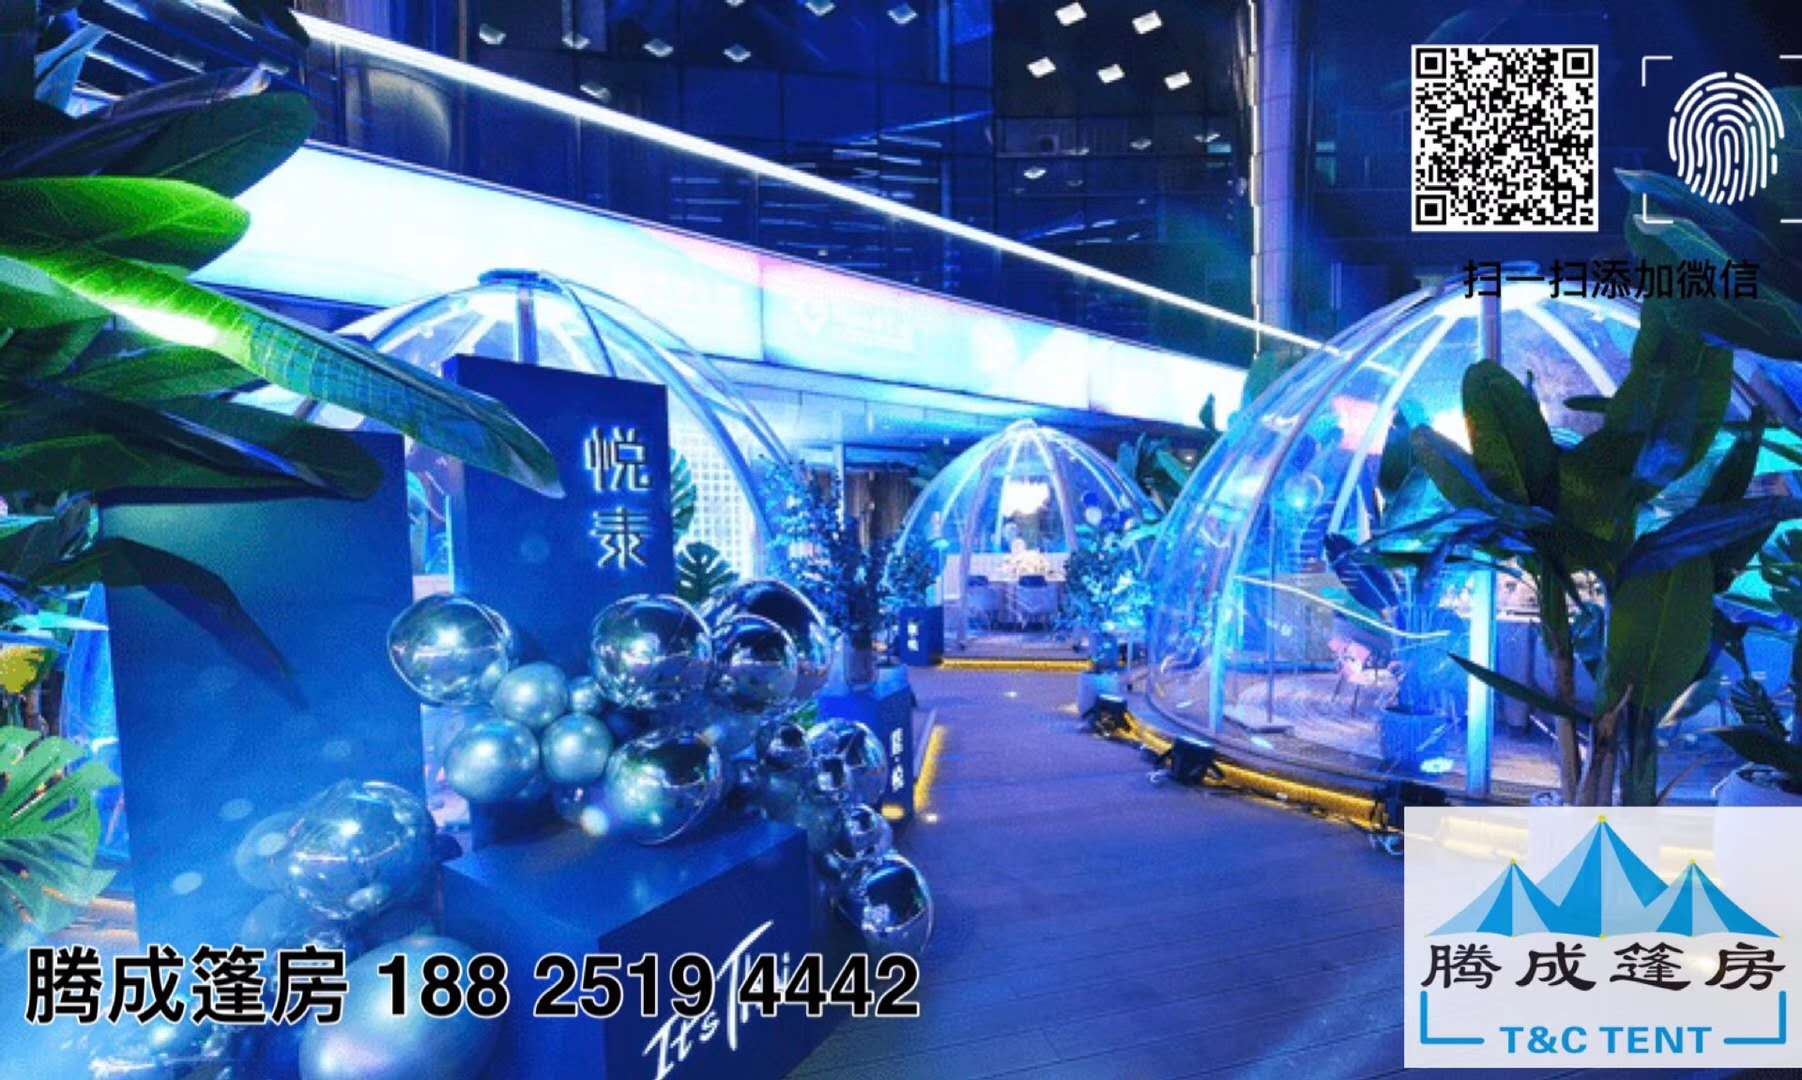 西安首家悦泰网红星空玻璃餐厅星空帐篷效果展示